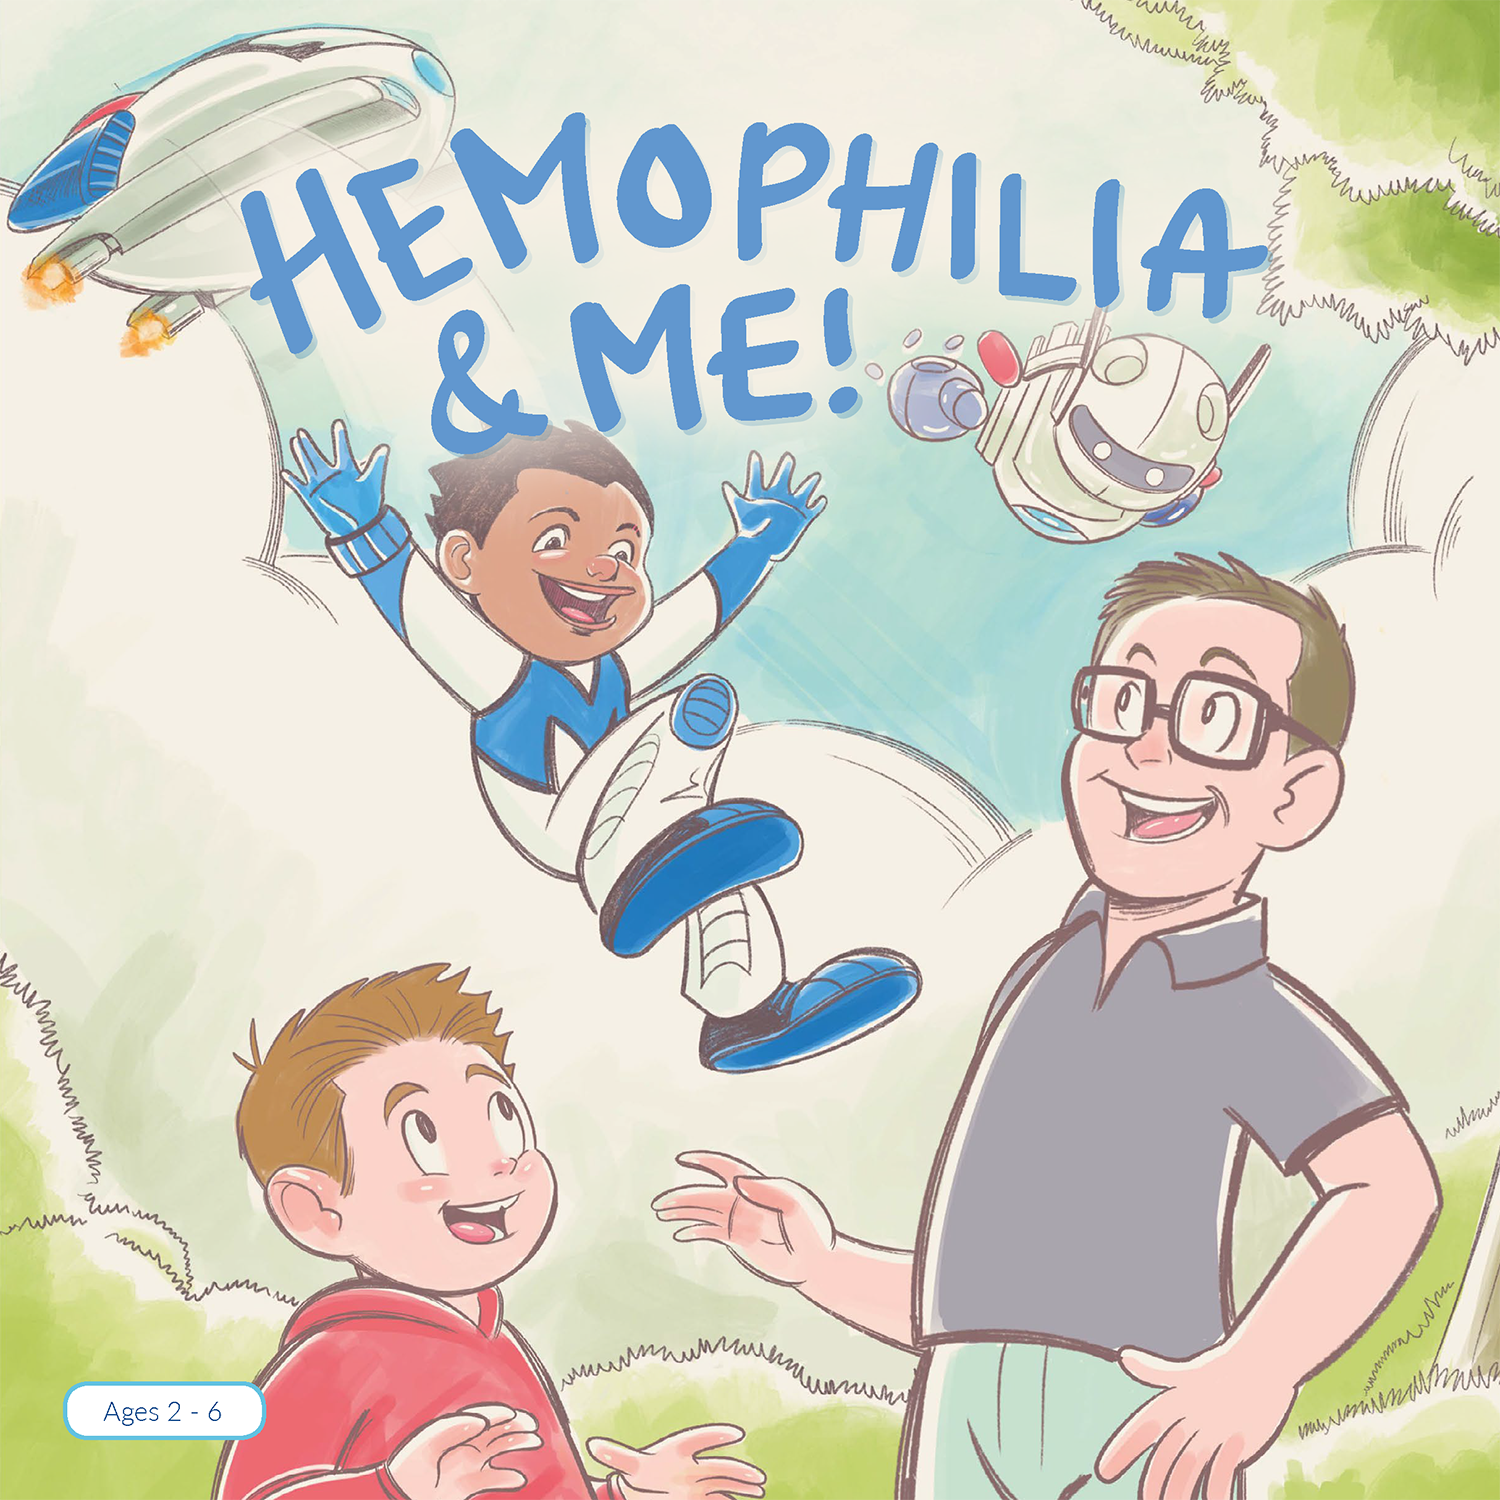 Hemophilia & Me cover